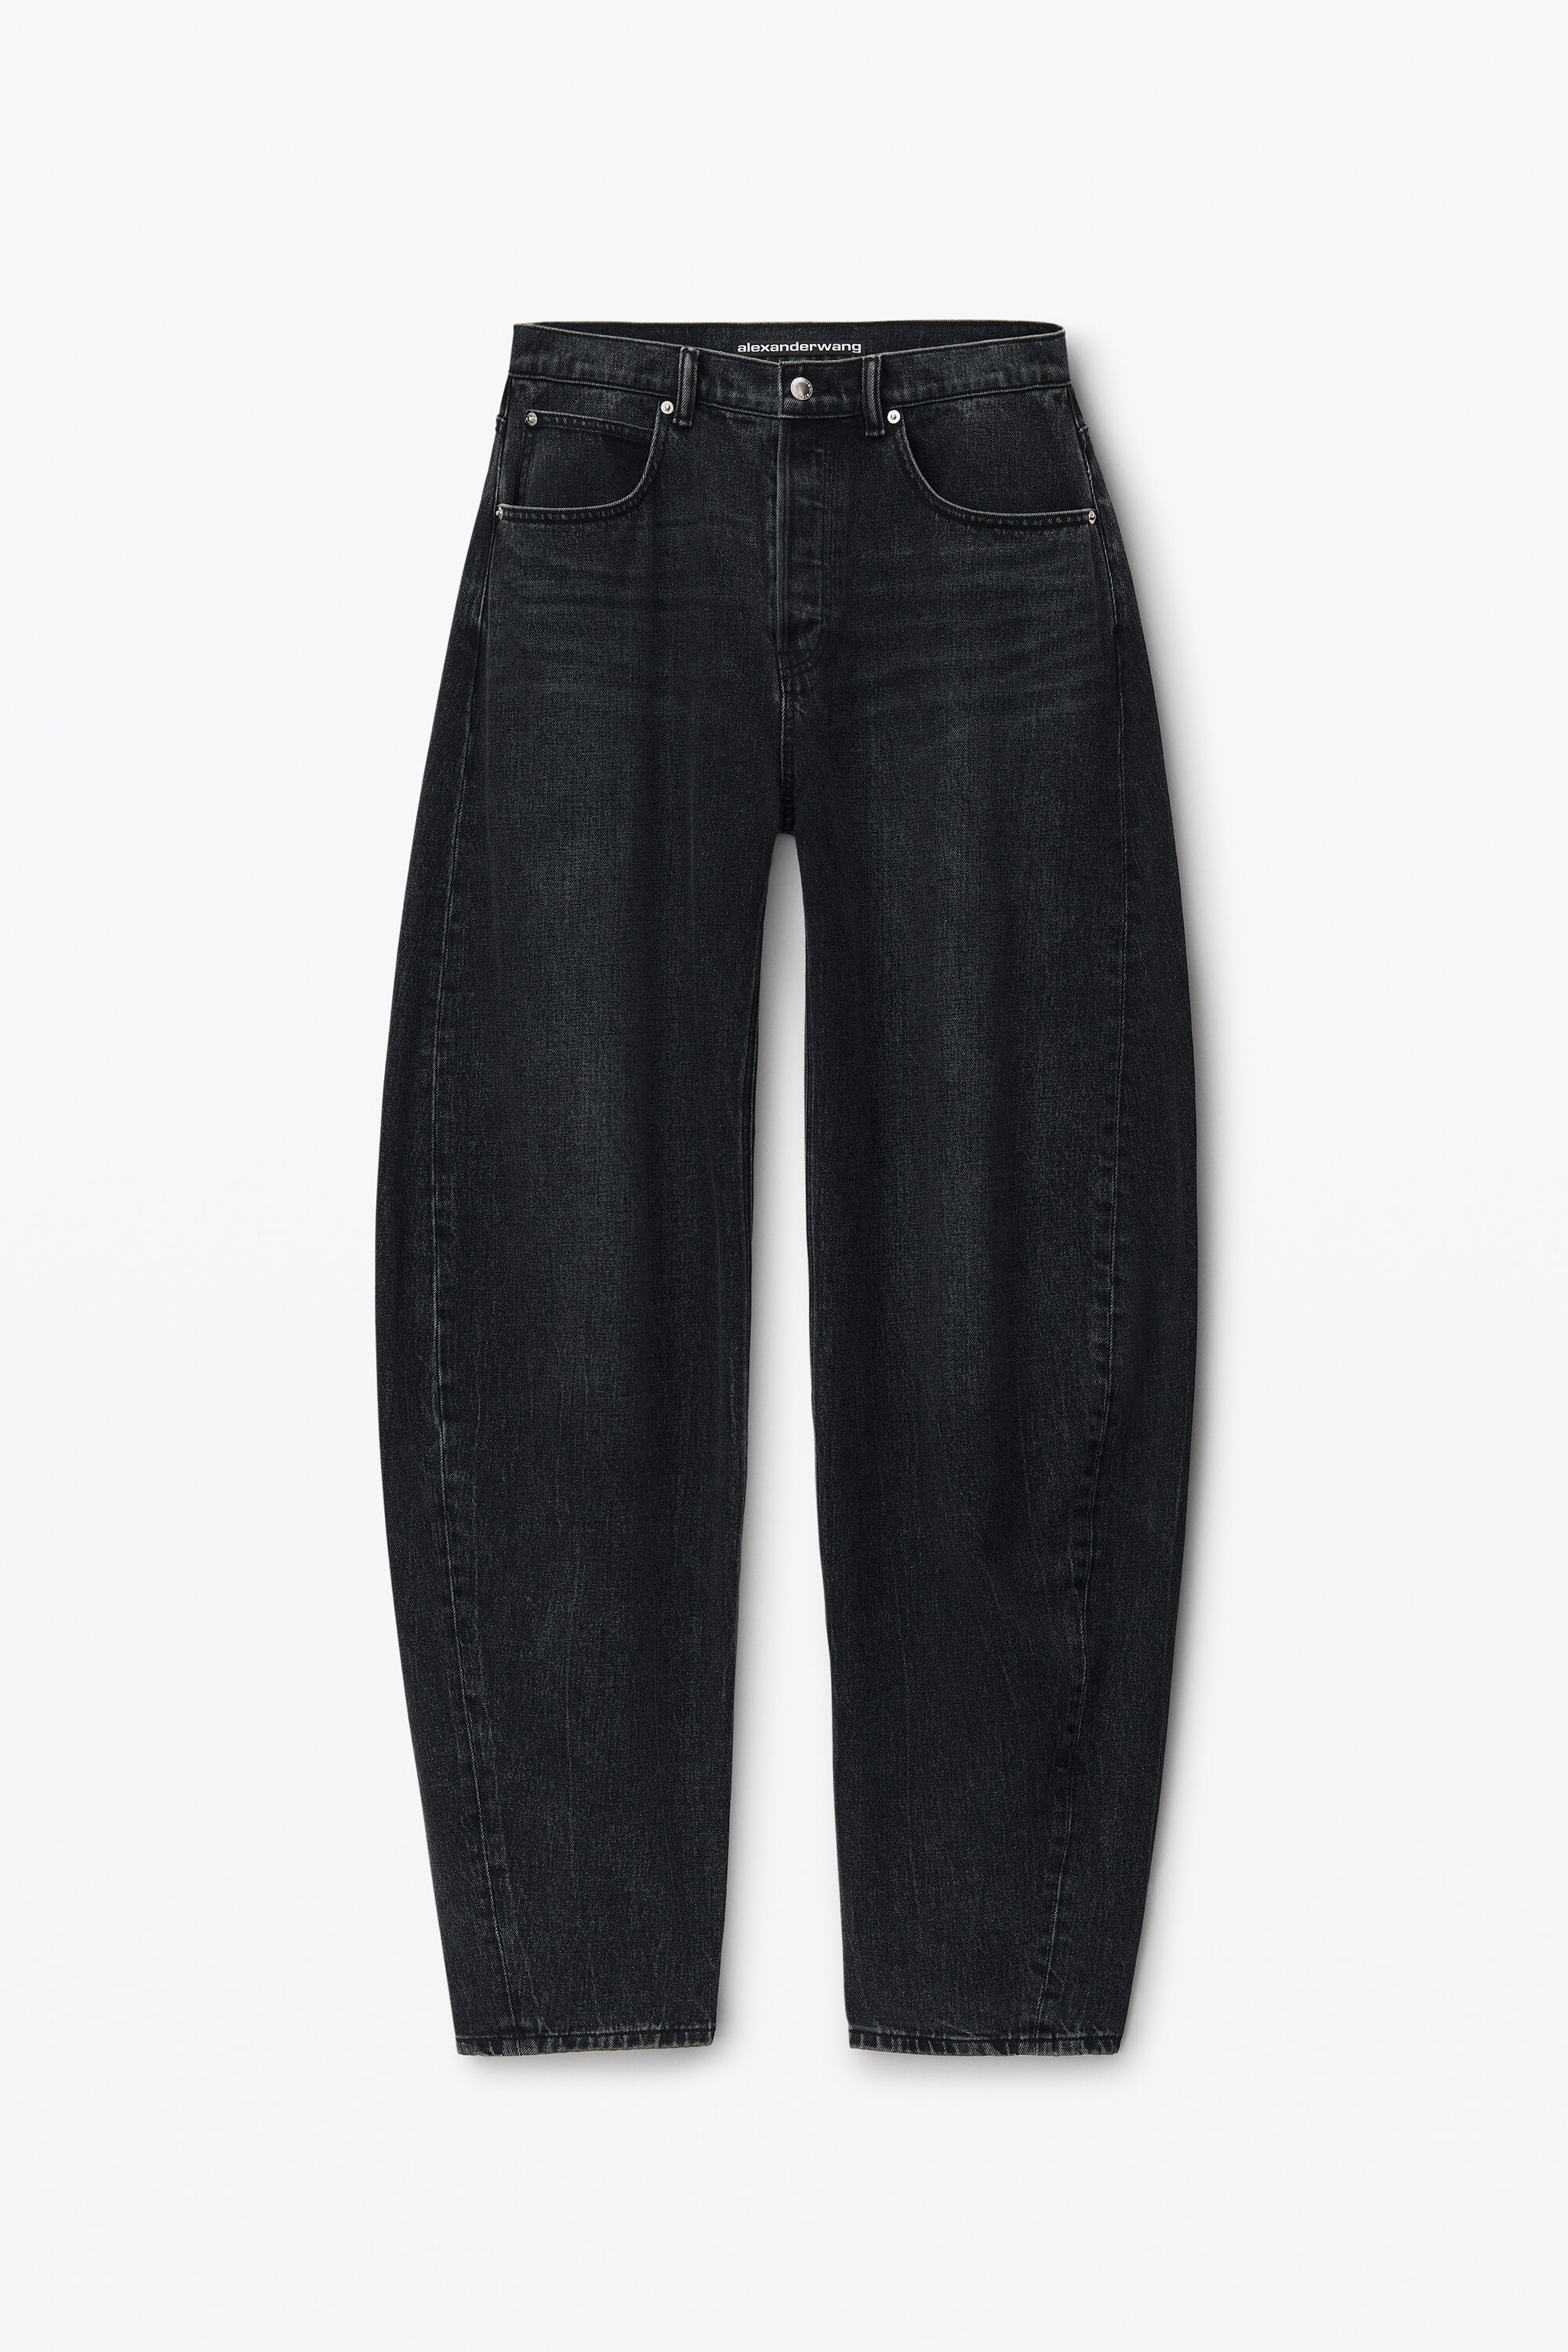 Oversized Low Rise Jean in Denim in GREY AGED | alexanderwang®